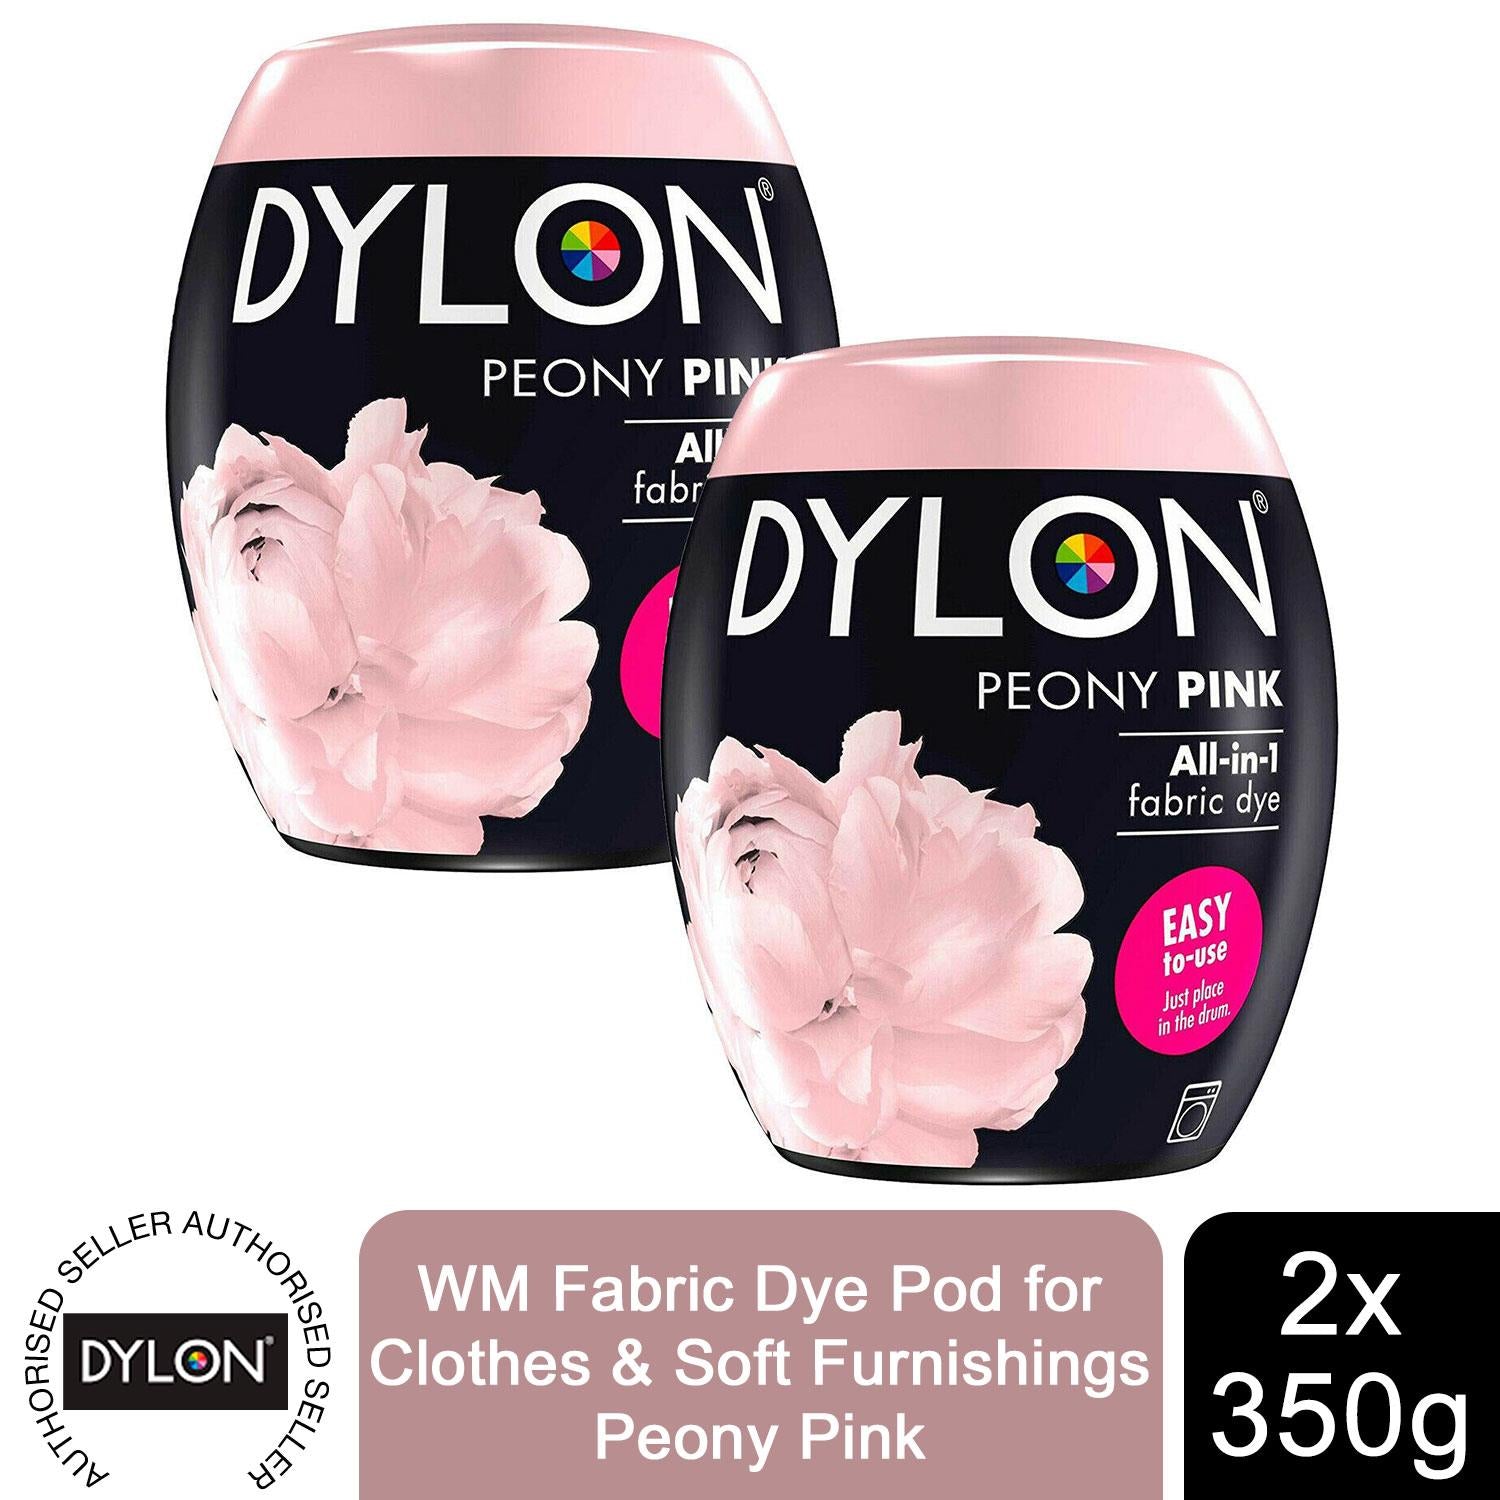 Petal Pink All-Purpose Dye – Rit Dye